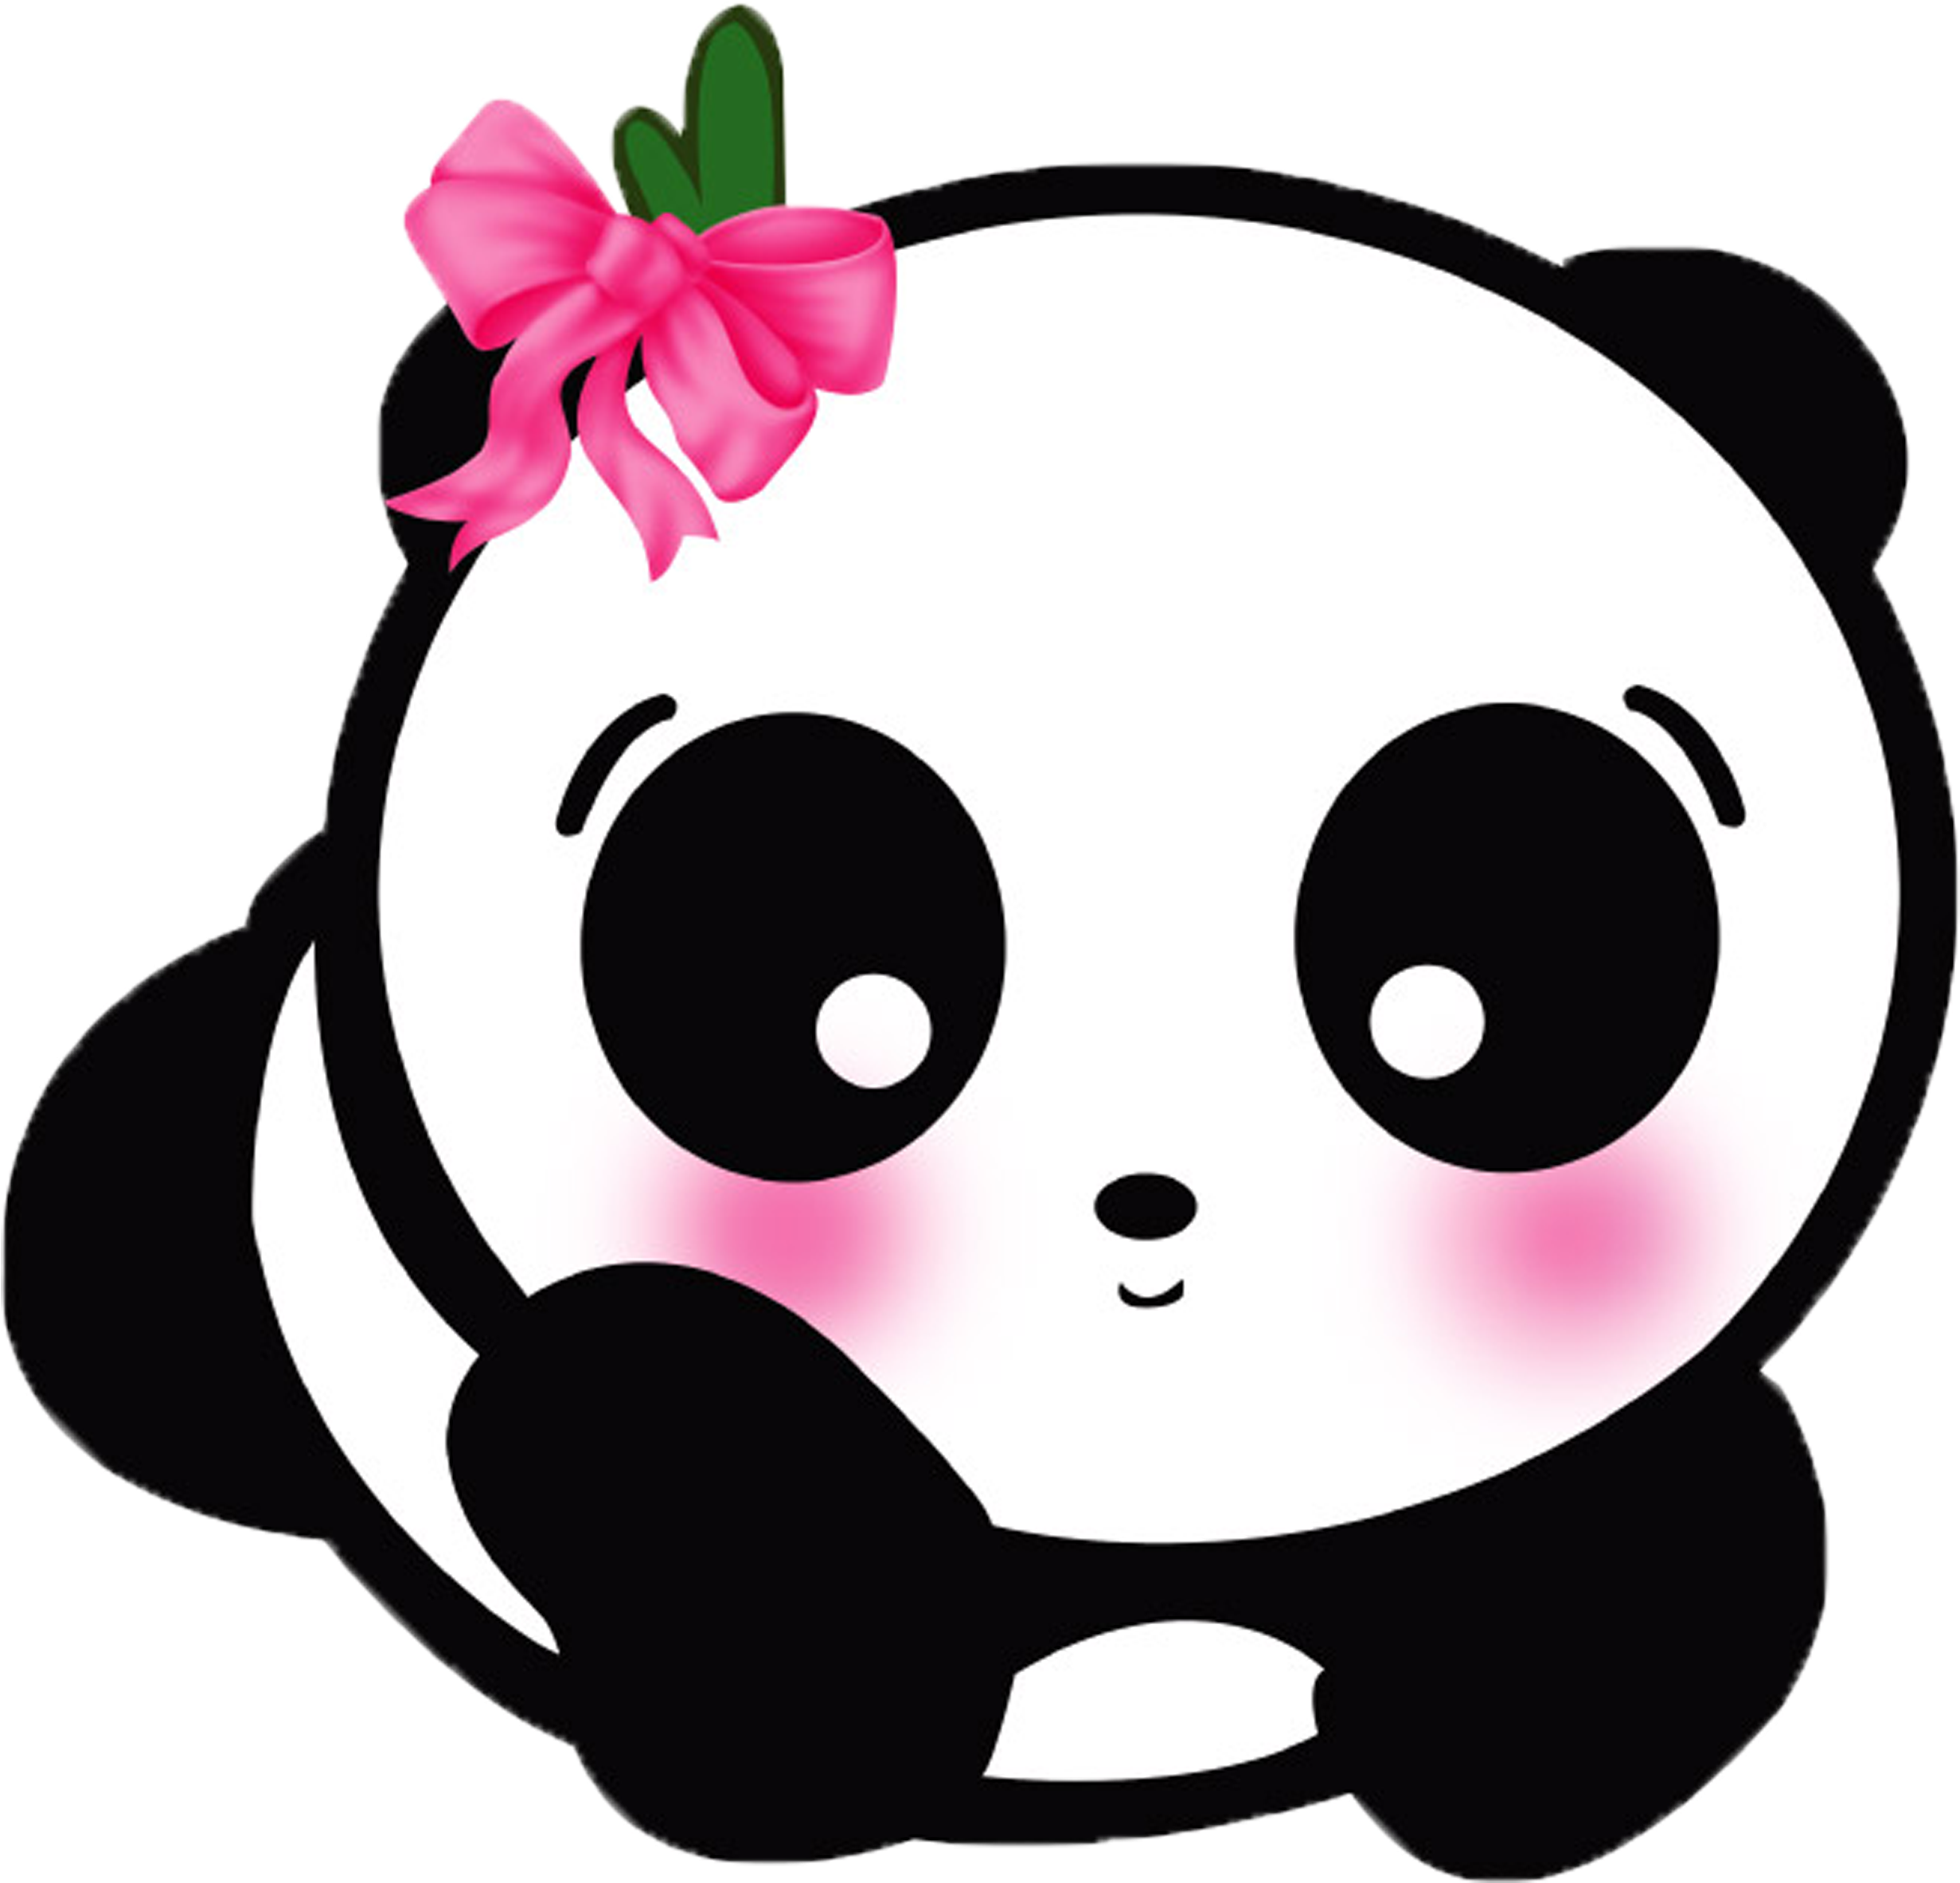 Giant Panda Cute Panda Cuteness Android Application - Cute Panda Cartoon Png (4320x4320)